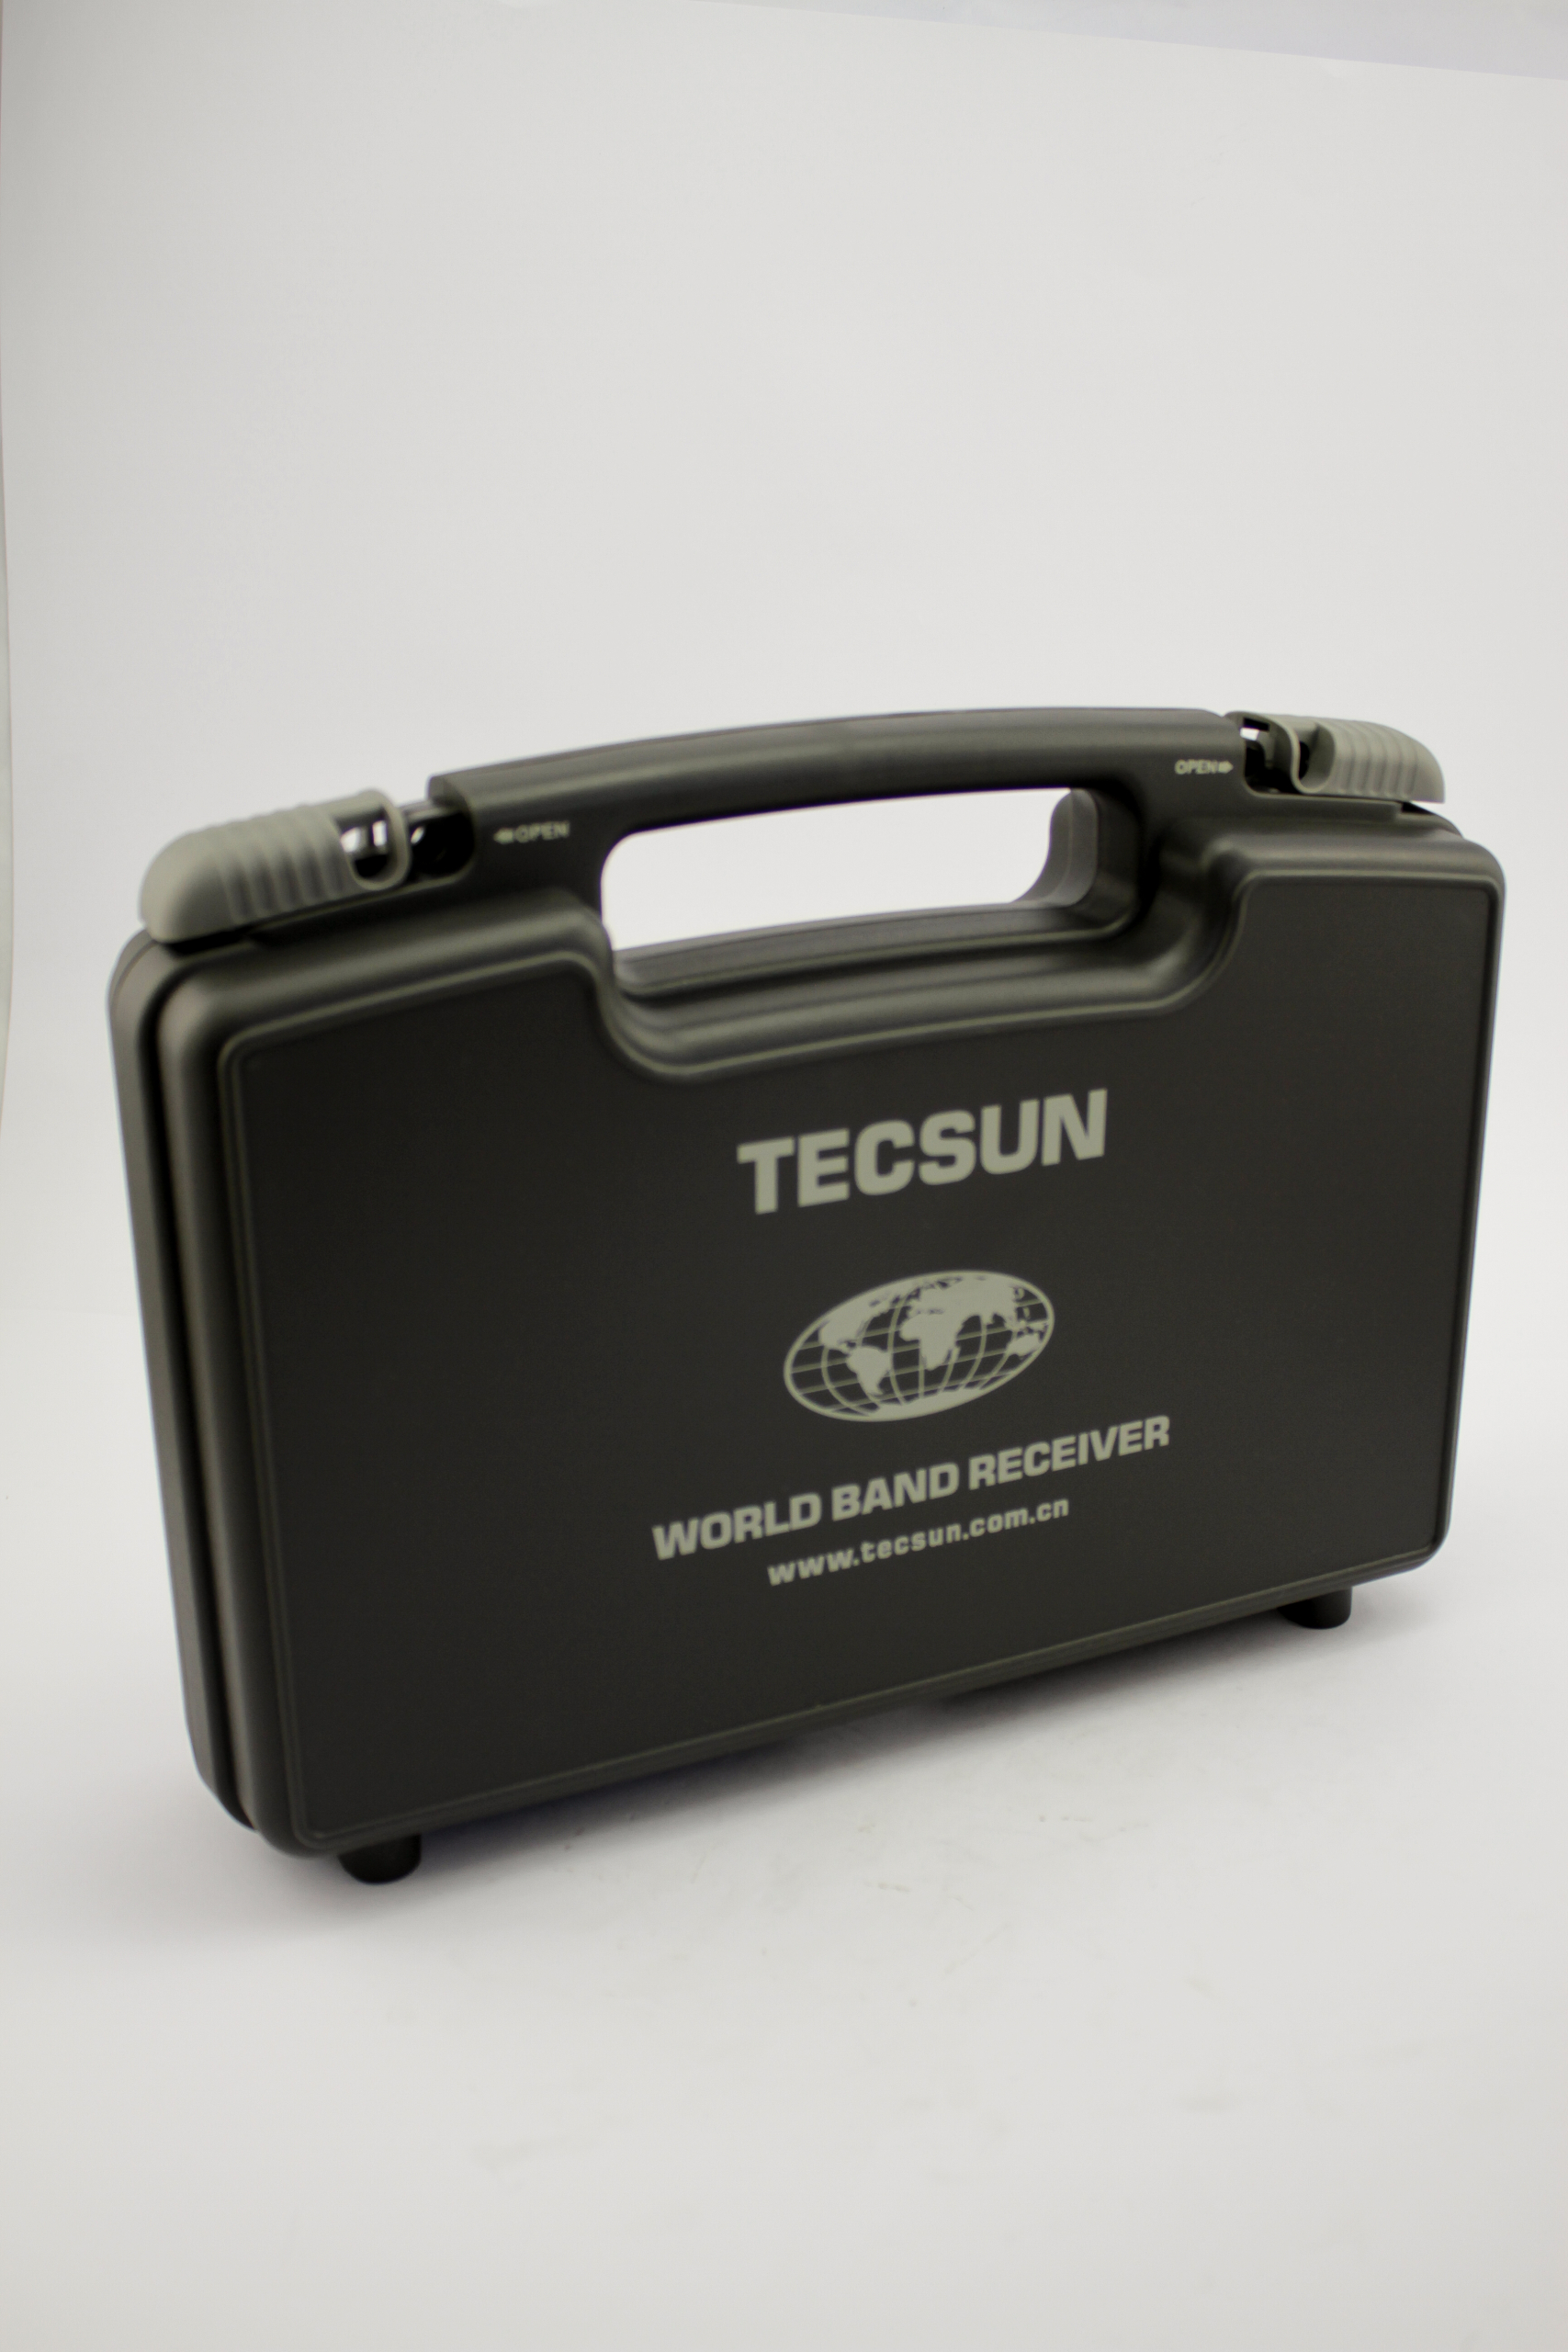 Tecsun-Hardcase-1-scaled.jpg